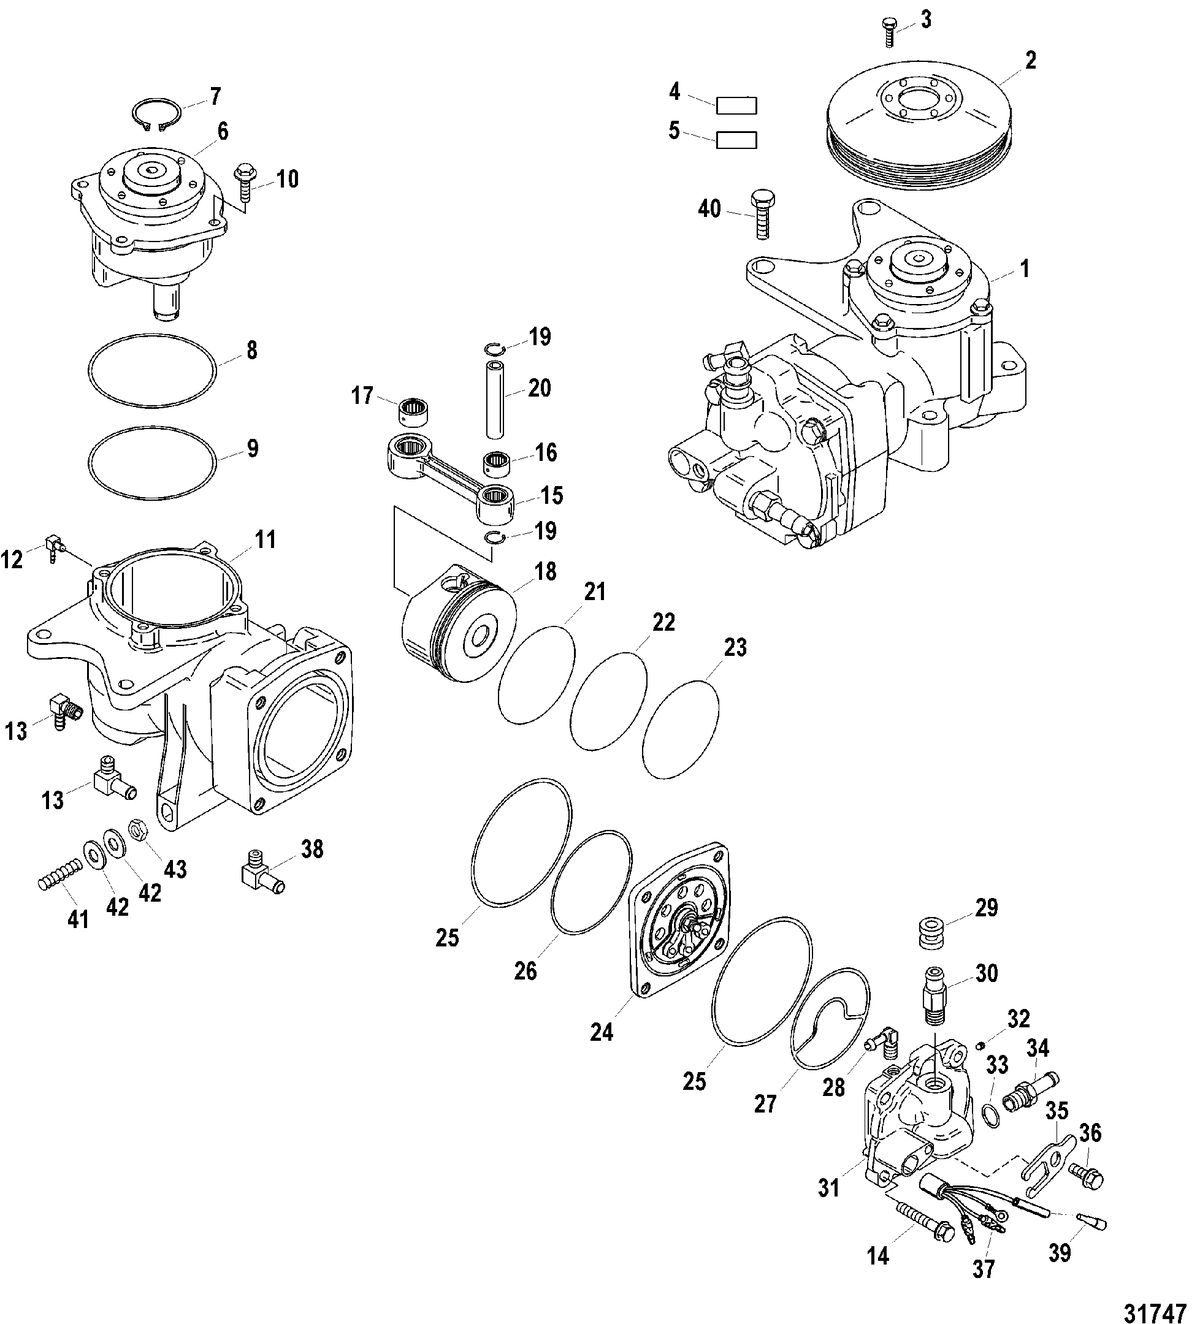 SPORTJET 200 DFI JET DRIVE Air Compressor Components(Design I)